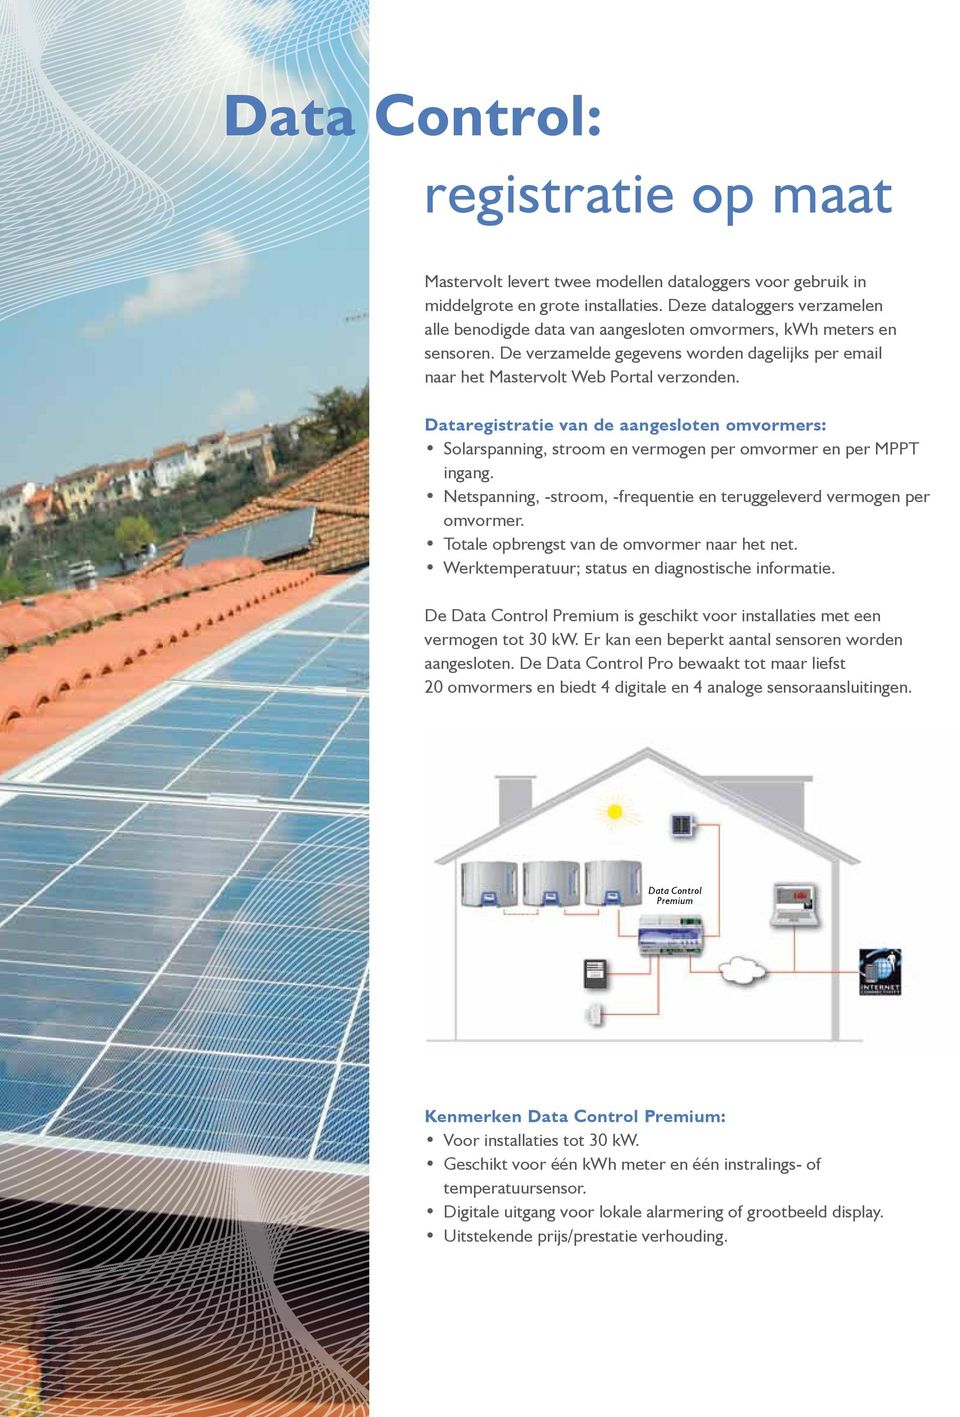 Dataregistratie van de aangesloten omvormers: Solarspanning, stroom en vermogen per omvormer en per MPPT ingang. Netspanning, -stroom, -frequentie en teruggeleverd vermogen per omvormer.